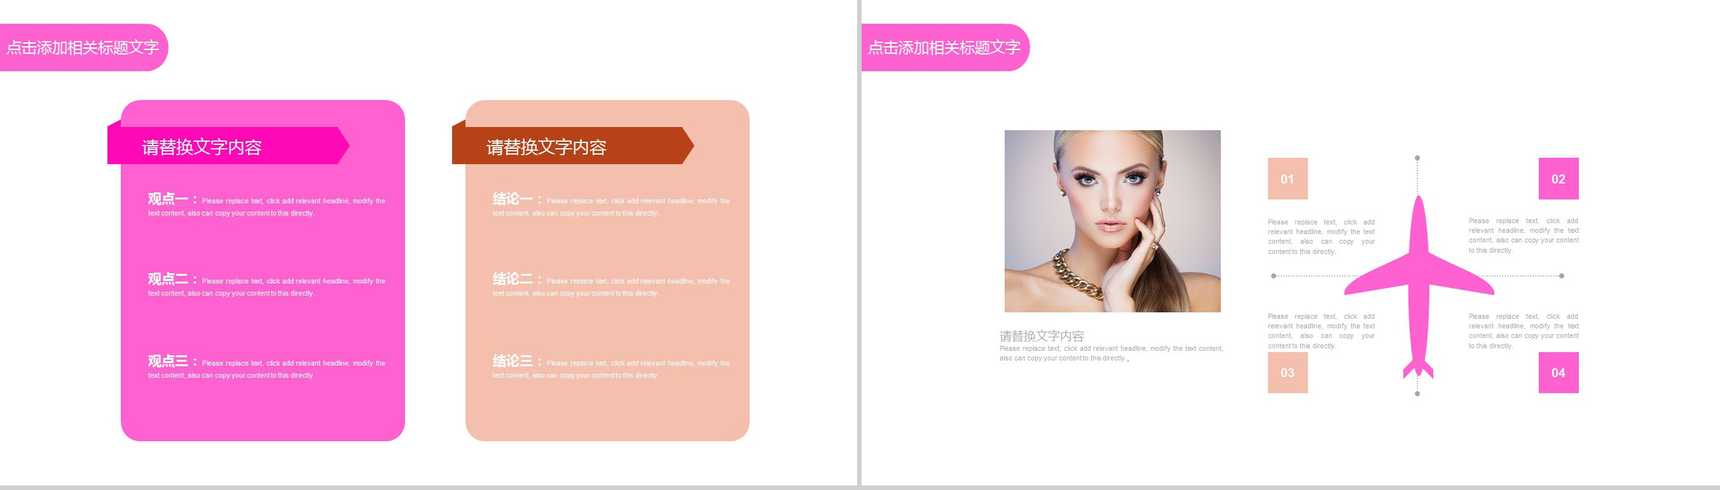 化妆品时尚美妆企业宣传PPT模板-9